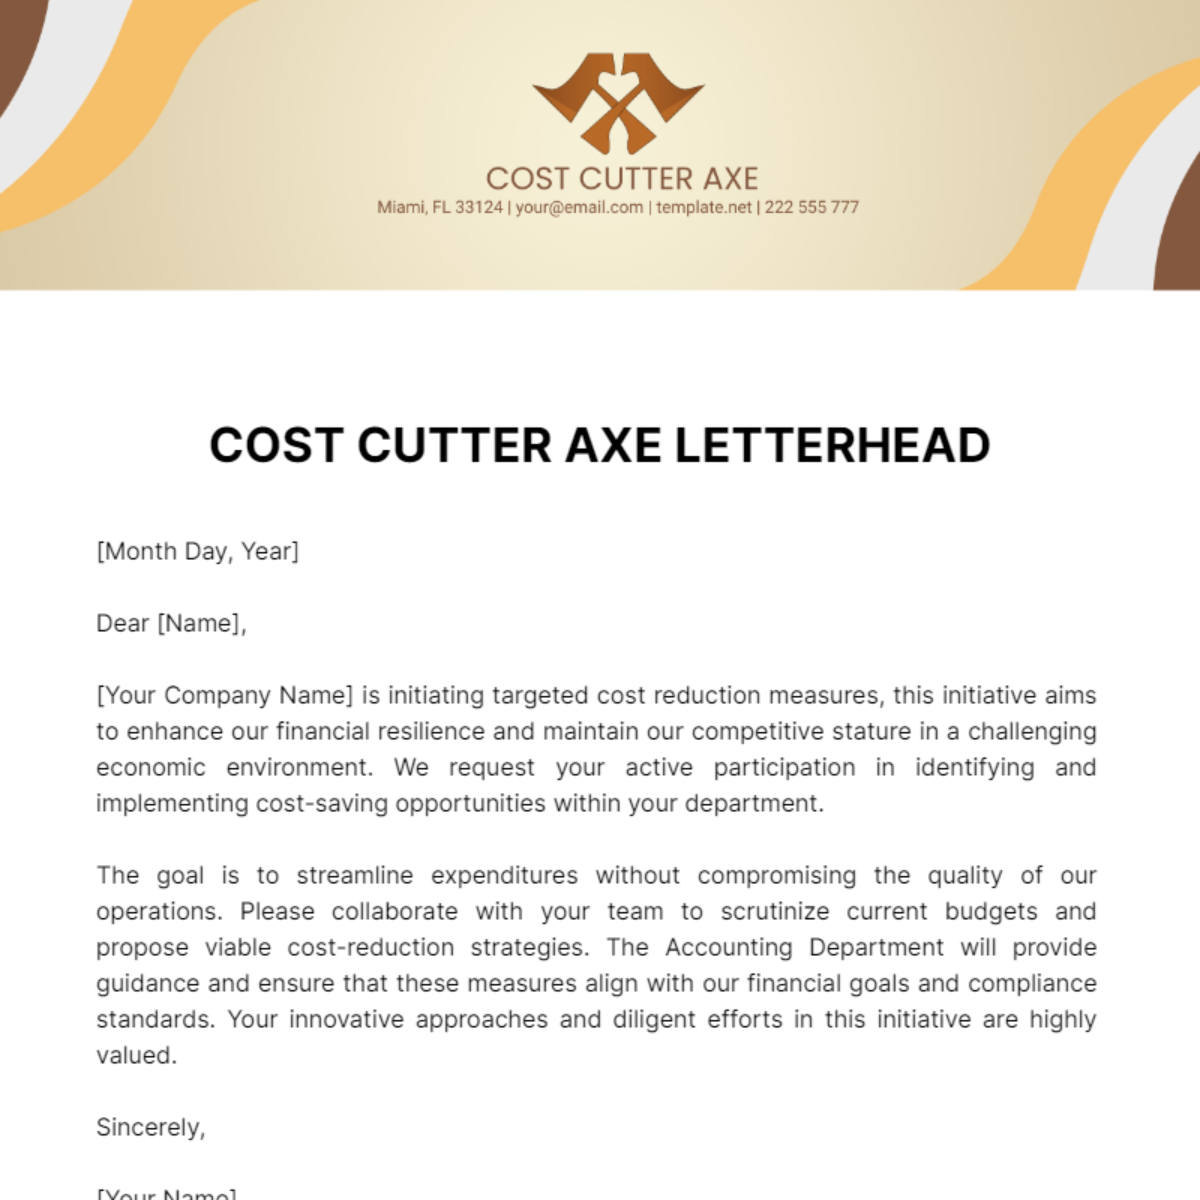 Cost Cutter Axe Letterhead Template